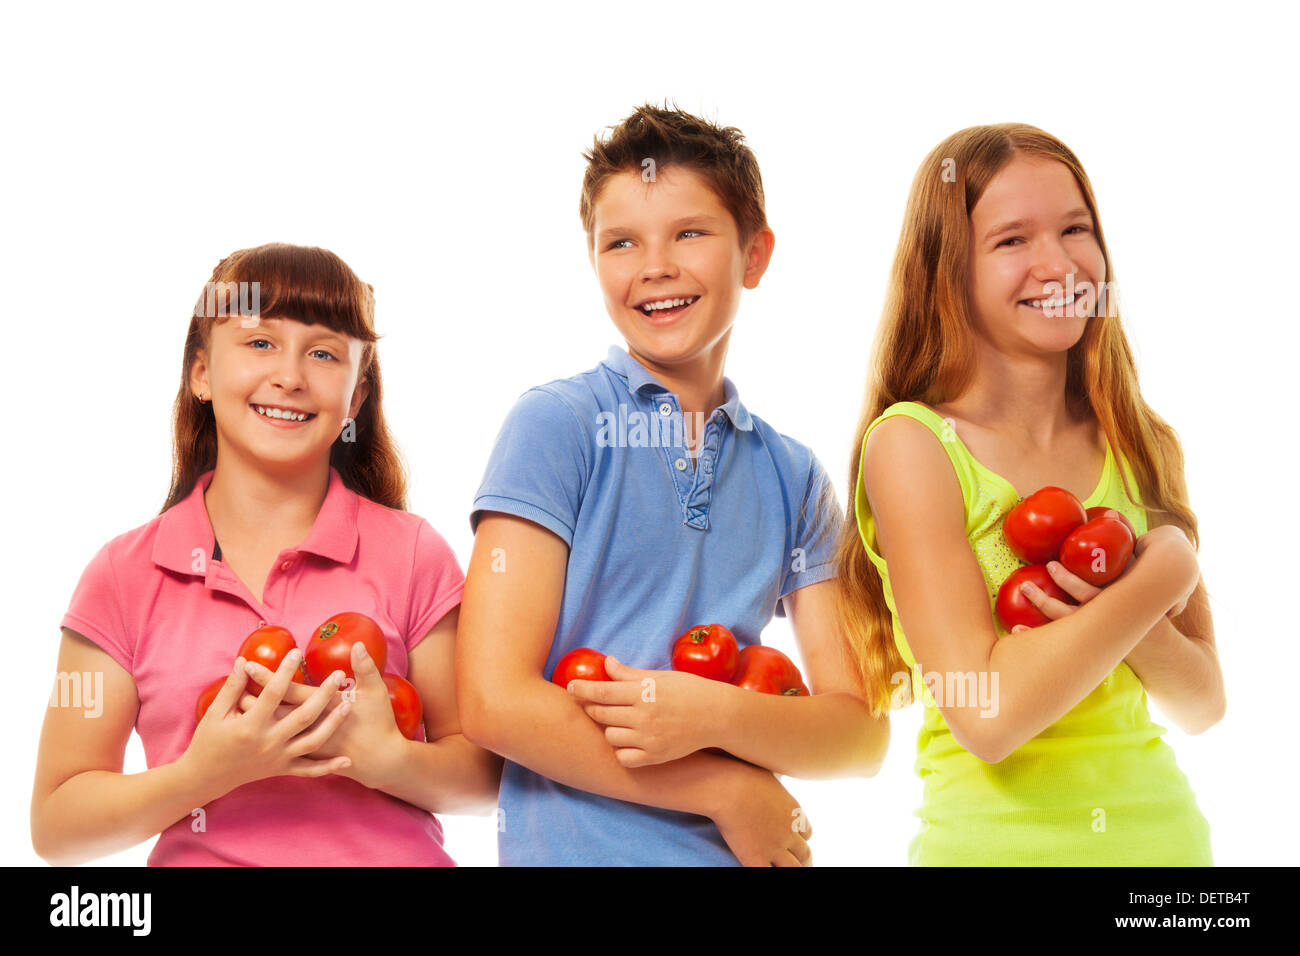 Groupe de jeunes filles et garçon holding fresh tomates mûres article isolated on white Banque D'Images